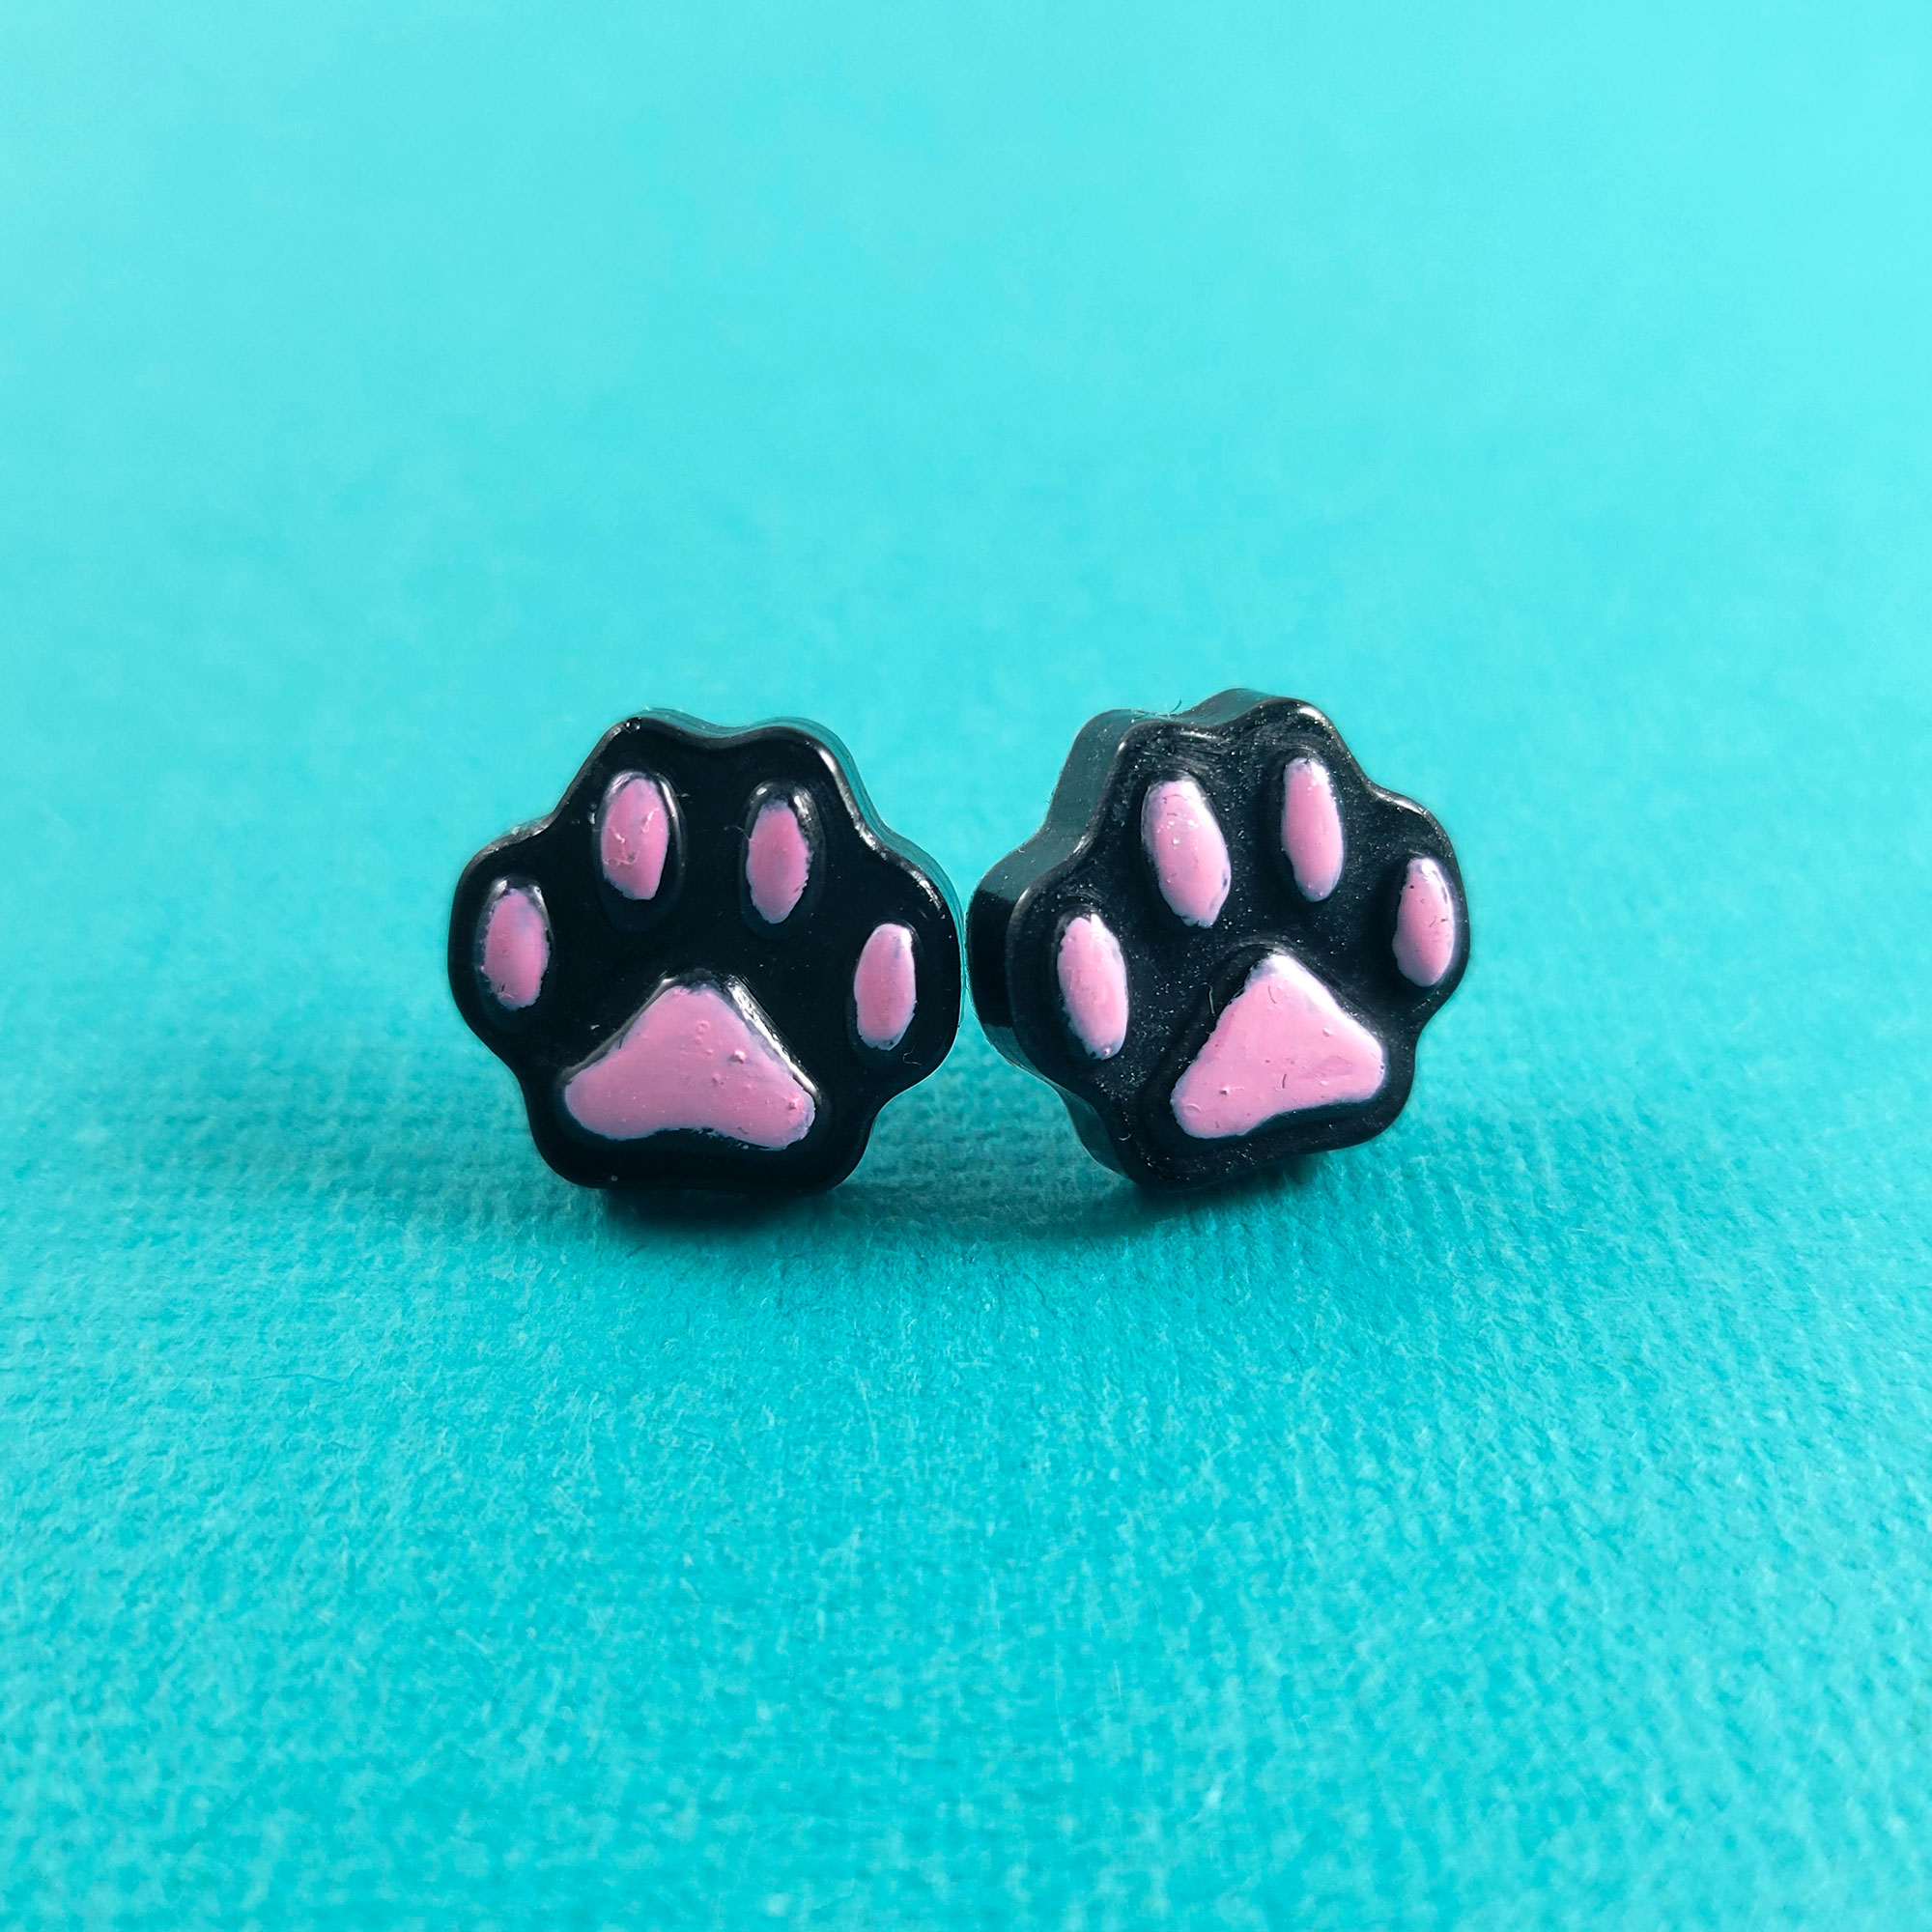 Cute Pawprint Earrings in Black by Wilde Designs